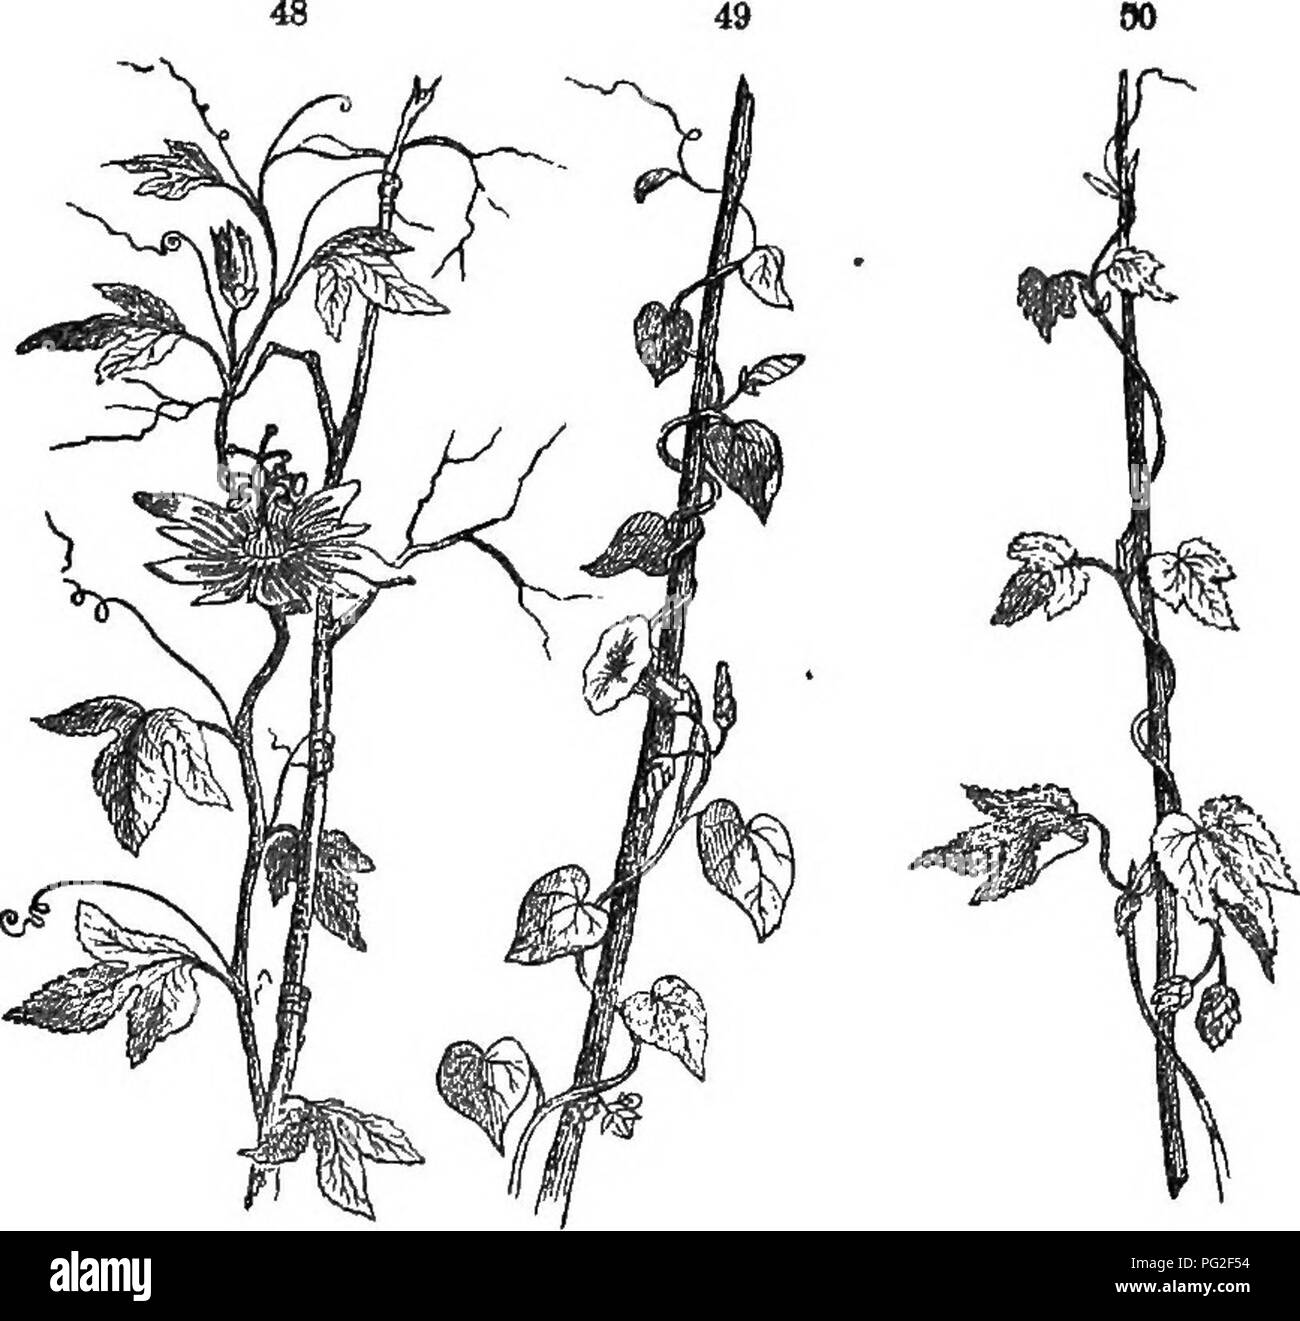 . Class-livre de botanique : être présente de la structure, la physiologie et la classification des végétaux ; avec une flore des États-Unis et du Canada . La botanique, la botanique, la botanique. L'AXE DE LA TIGE, ou croissant. 3 ? Ealled vrilles, il monte sur les arbres et autres objets d'une grande hauteur, comme le raisin, gourd, et d'autres plantes grimpantes.. La vigne. 48j de fleur de la passion (Passiflora lutea) escalade en vrilles. 49, moi-ning-gloiy, twining de droite à gauche. 50, hop, twining de gauche à droite. 179. Le twining vind, ayant également une longueur d'disproportloned considérablement son dia- mètre, appuie lui-même sur d'autres plantes ou obj Banque D'Images